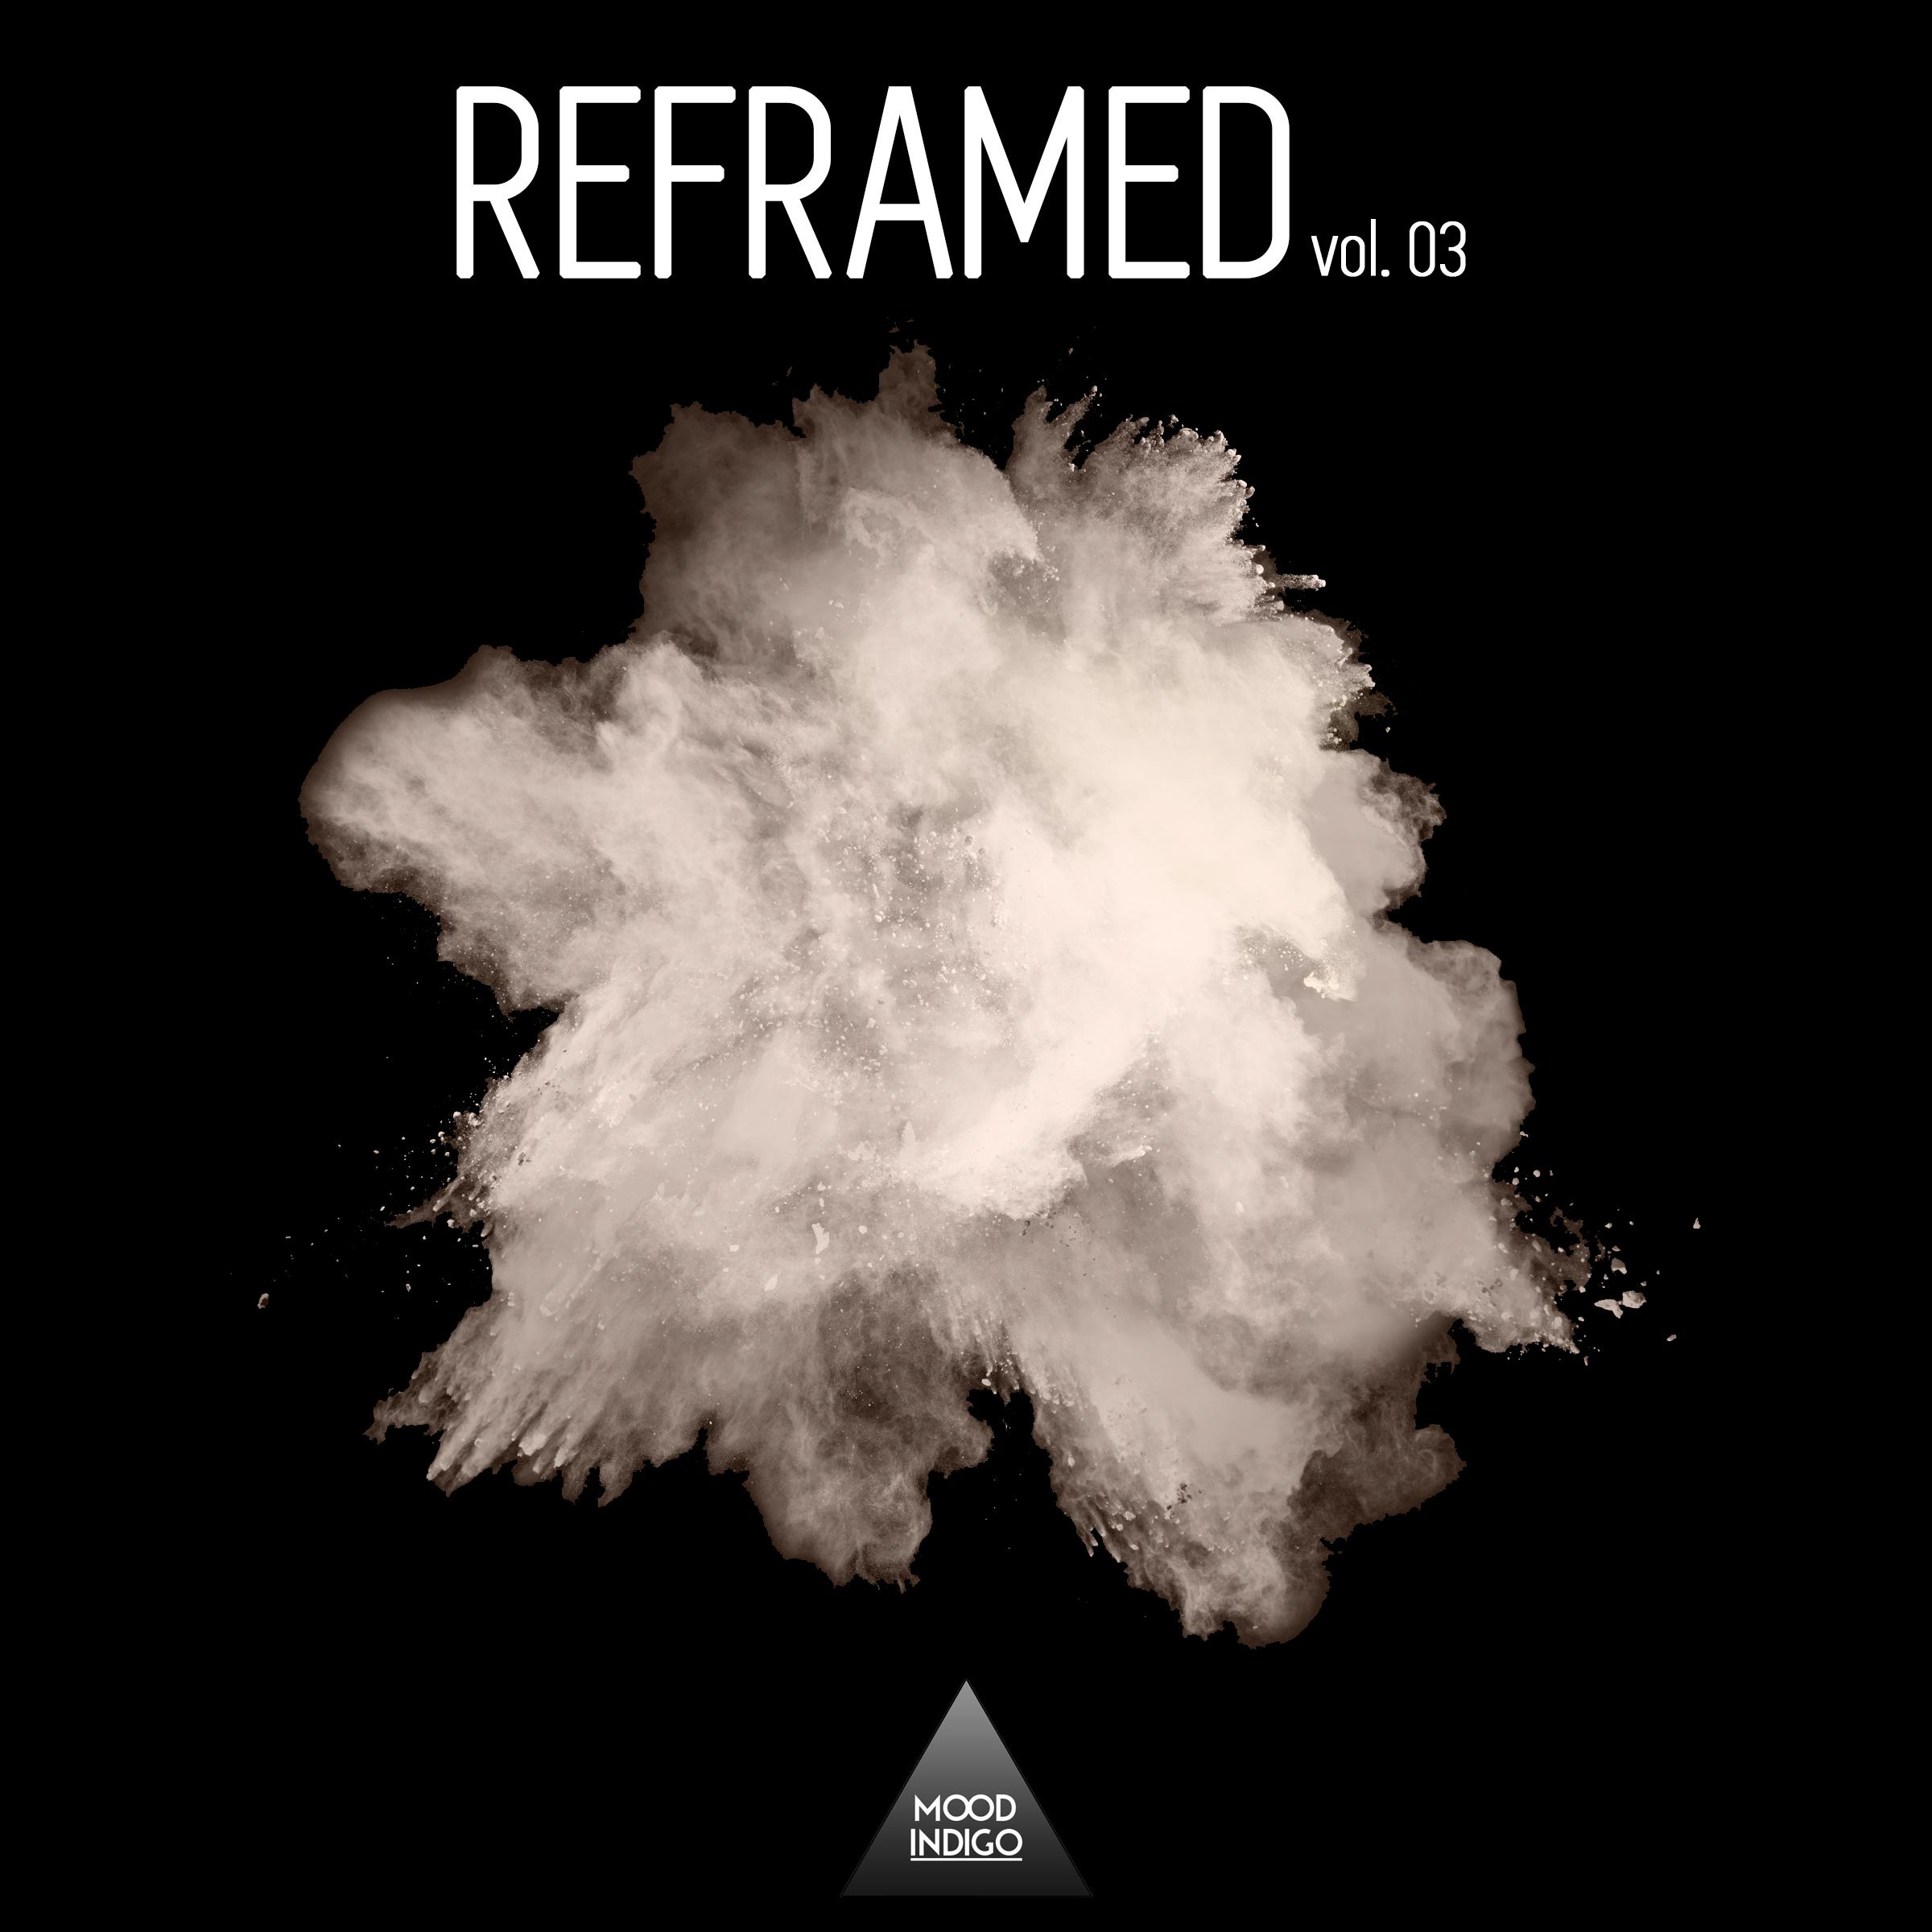 Reframed, Vol. 03